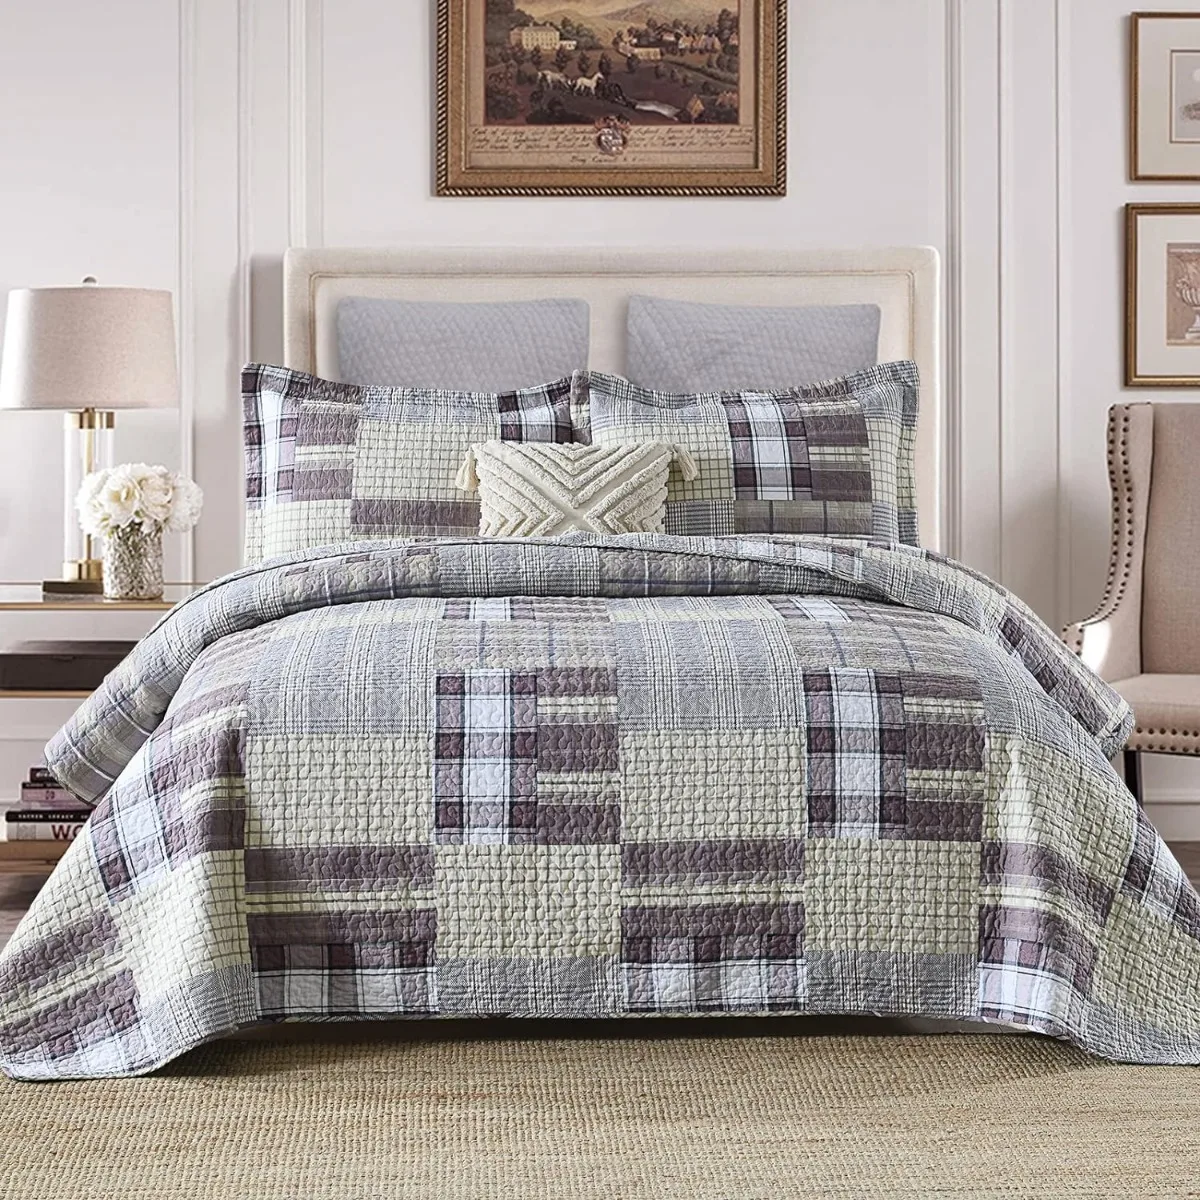 

Комплект стеганого одеяла из 100% хлопка, Королевский размер, легкое двухстороннее одеяло для фермерского хозяйства, фиолетовое деревенское стеганое одеяло, 3 предмета